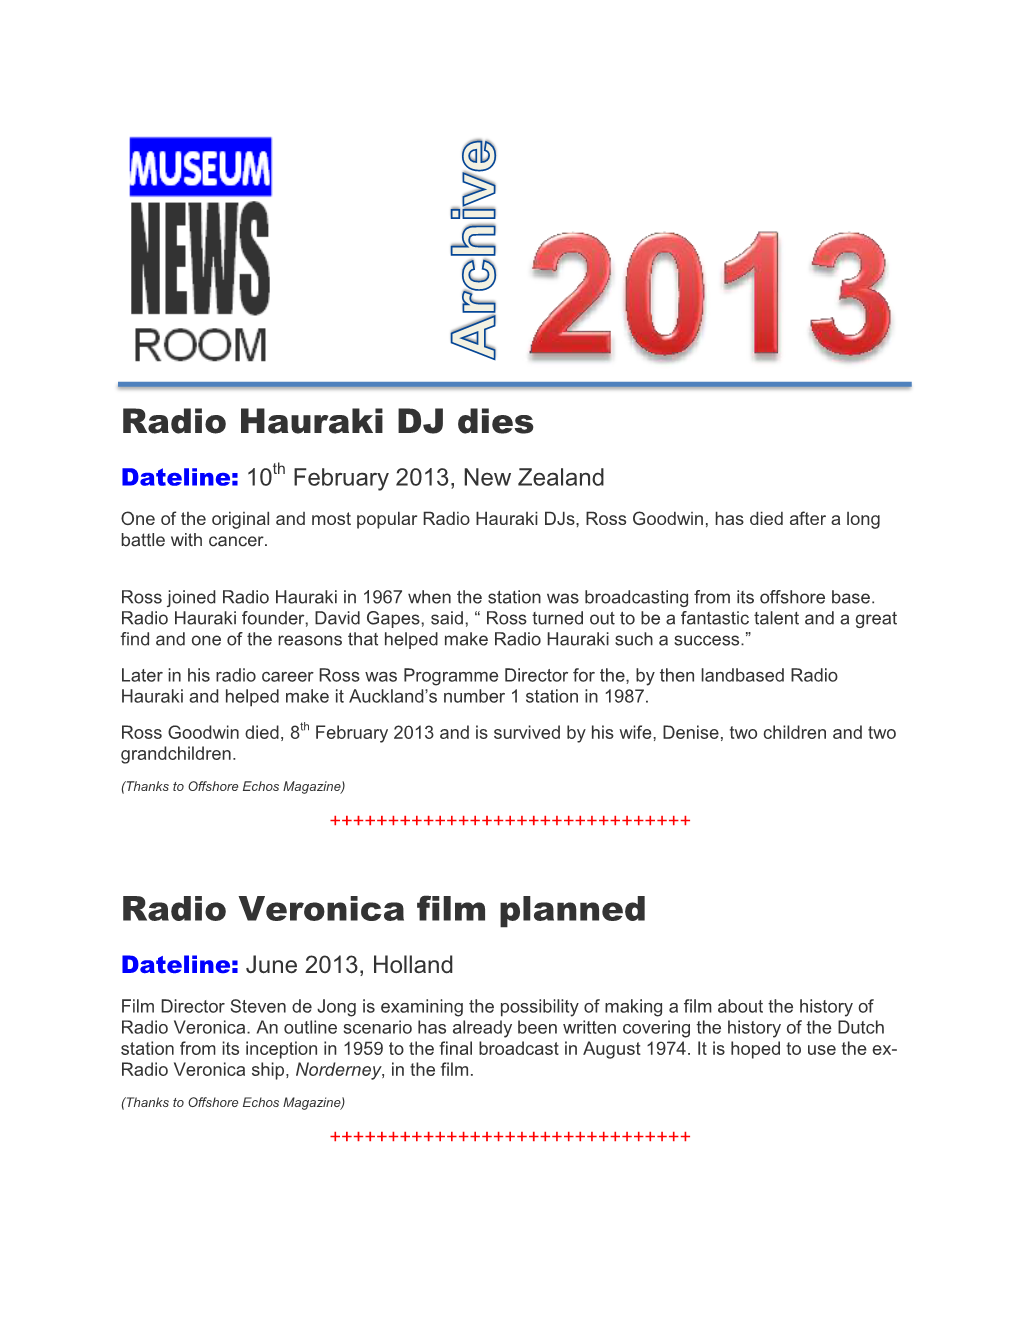 Radio Hauraki DJ Dies Radio Veronica Film Planned